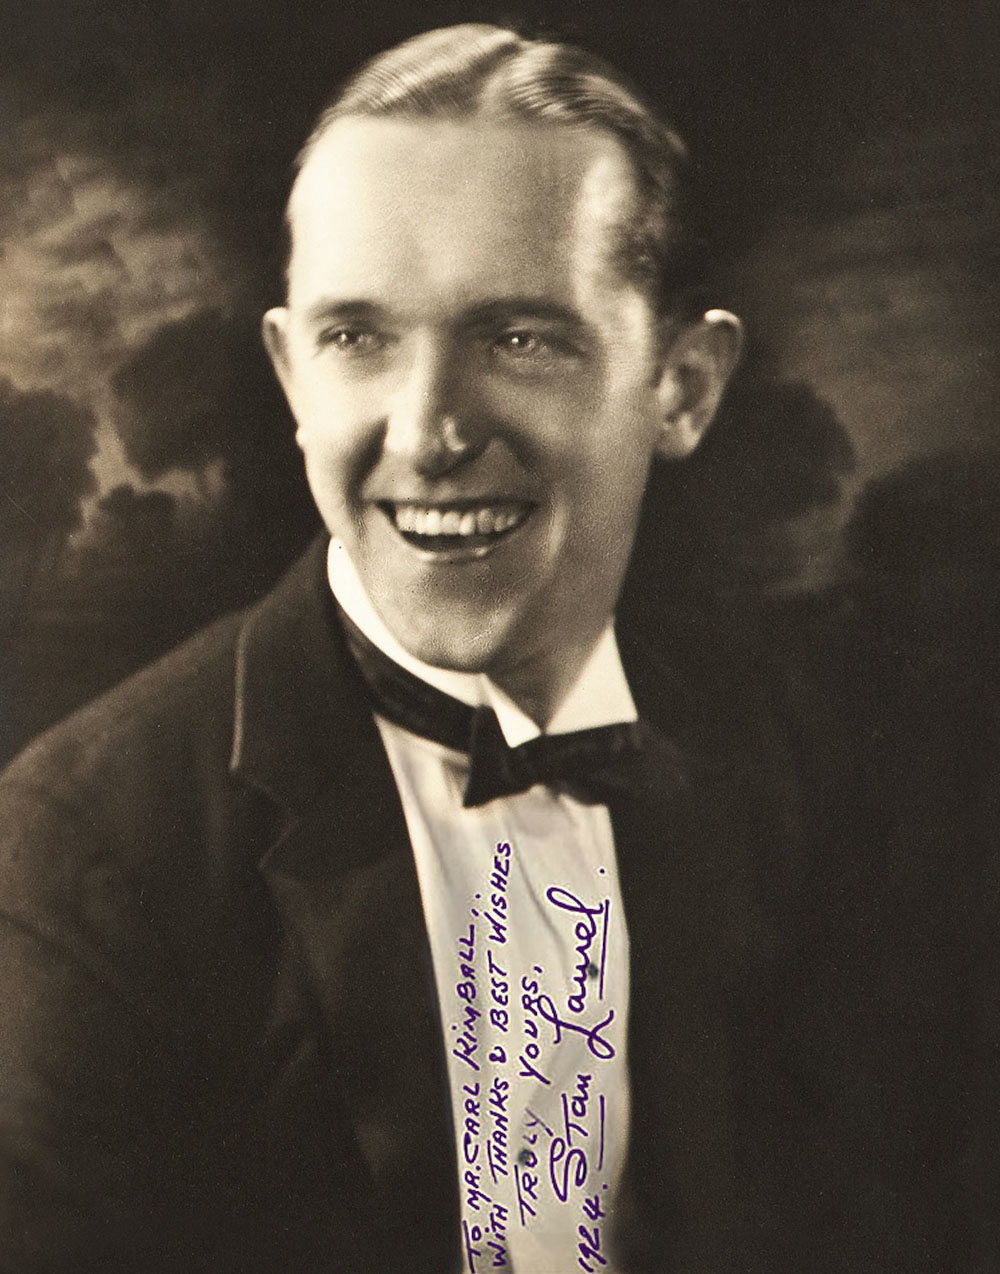 Autographed Photo to Carl Kimball - 1924